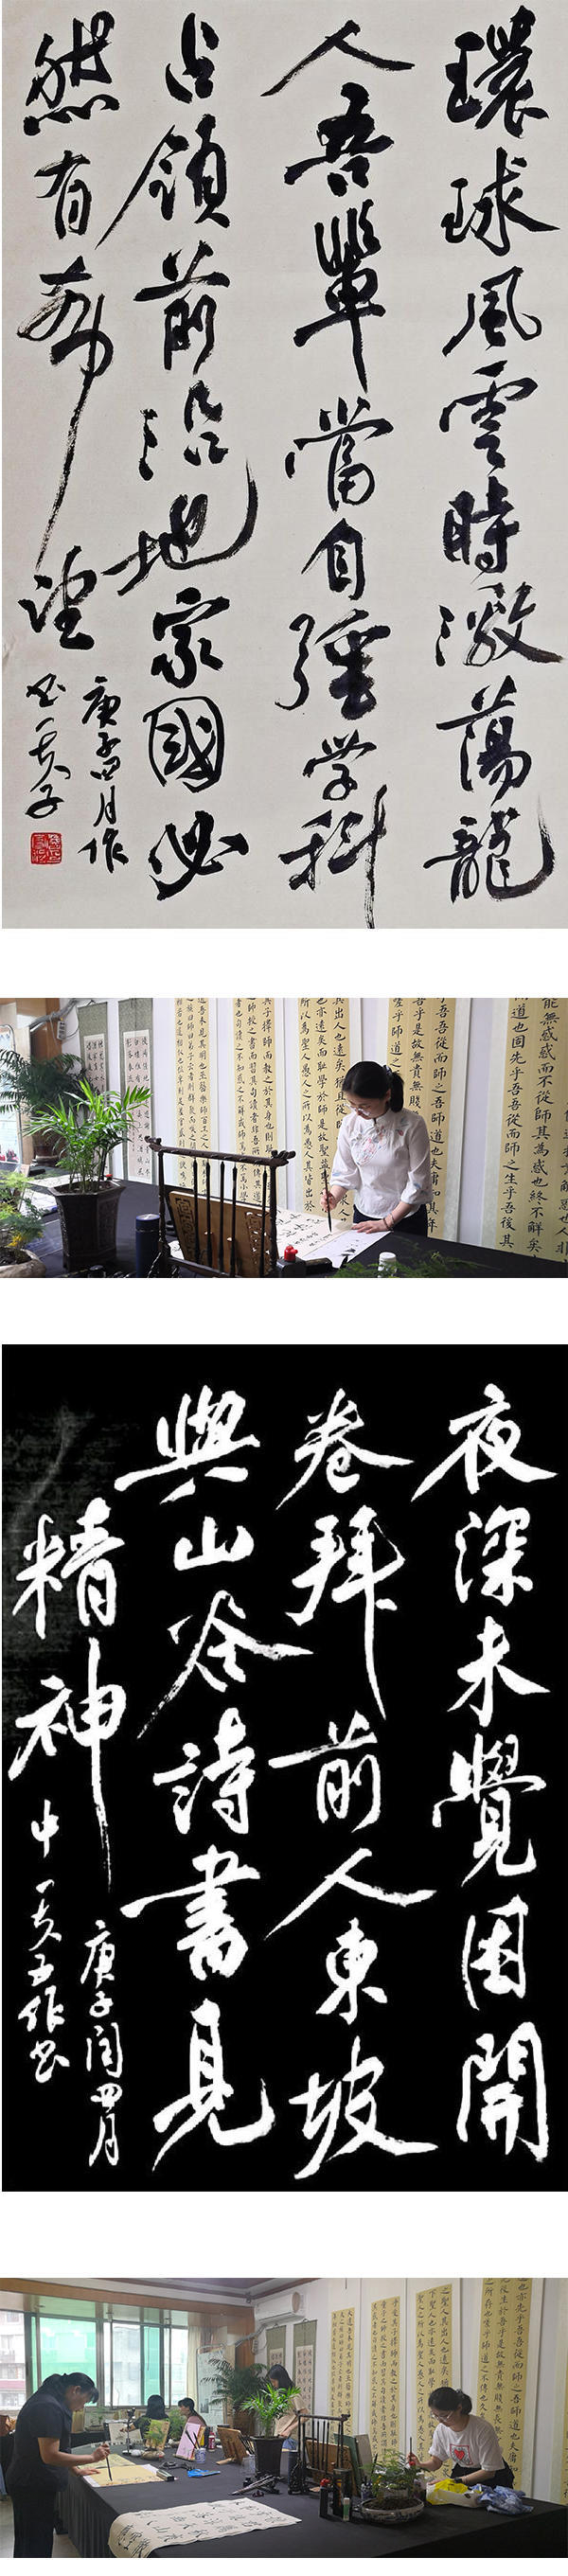 著名书画家詹富程向党的第一个百年献礼